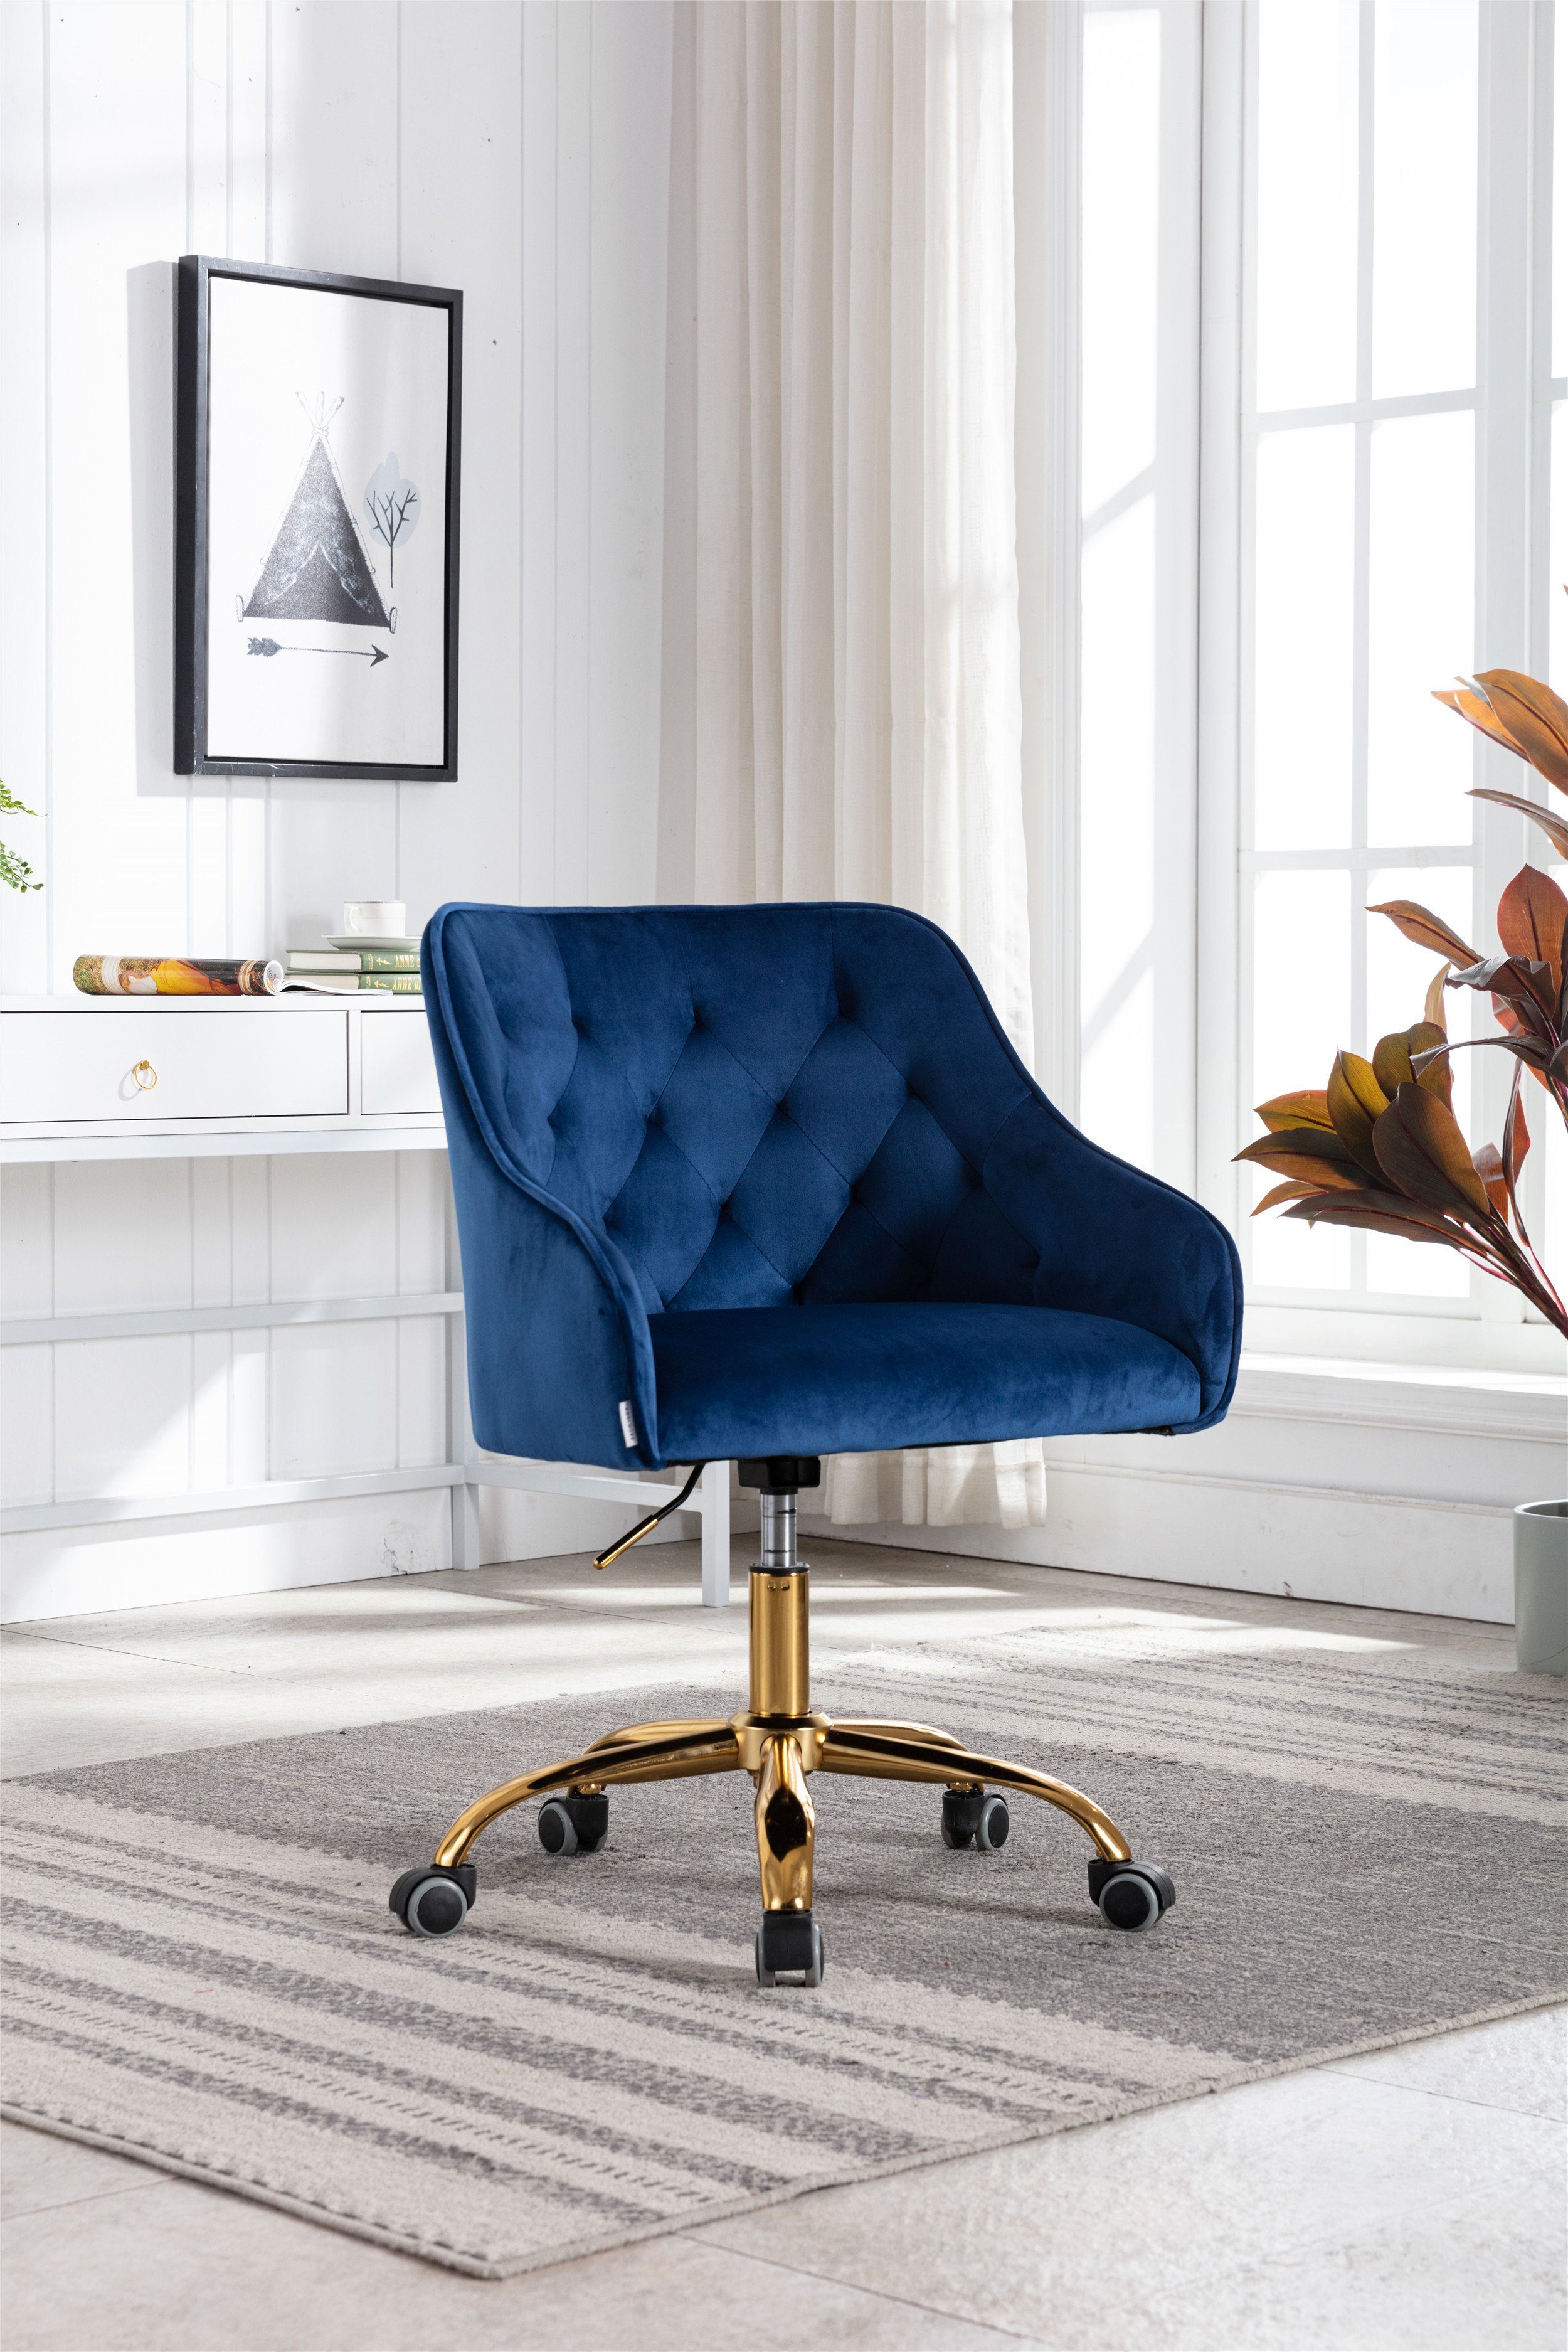 Blau drehbar Drehstuhl Samt Odikalo Bürostuhl Schminkstuhl mehrerer Farbe Schreibtischstuhl